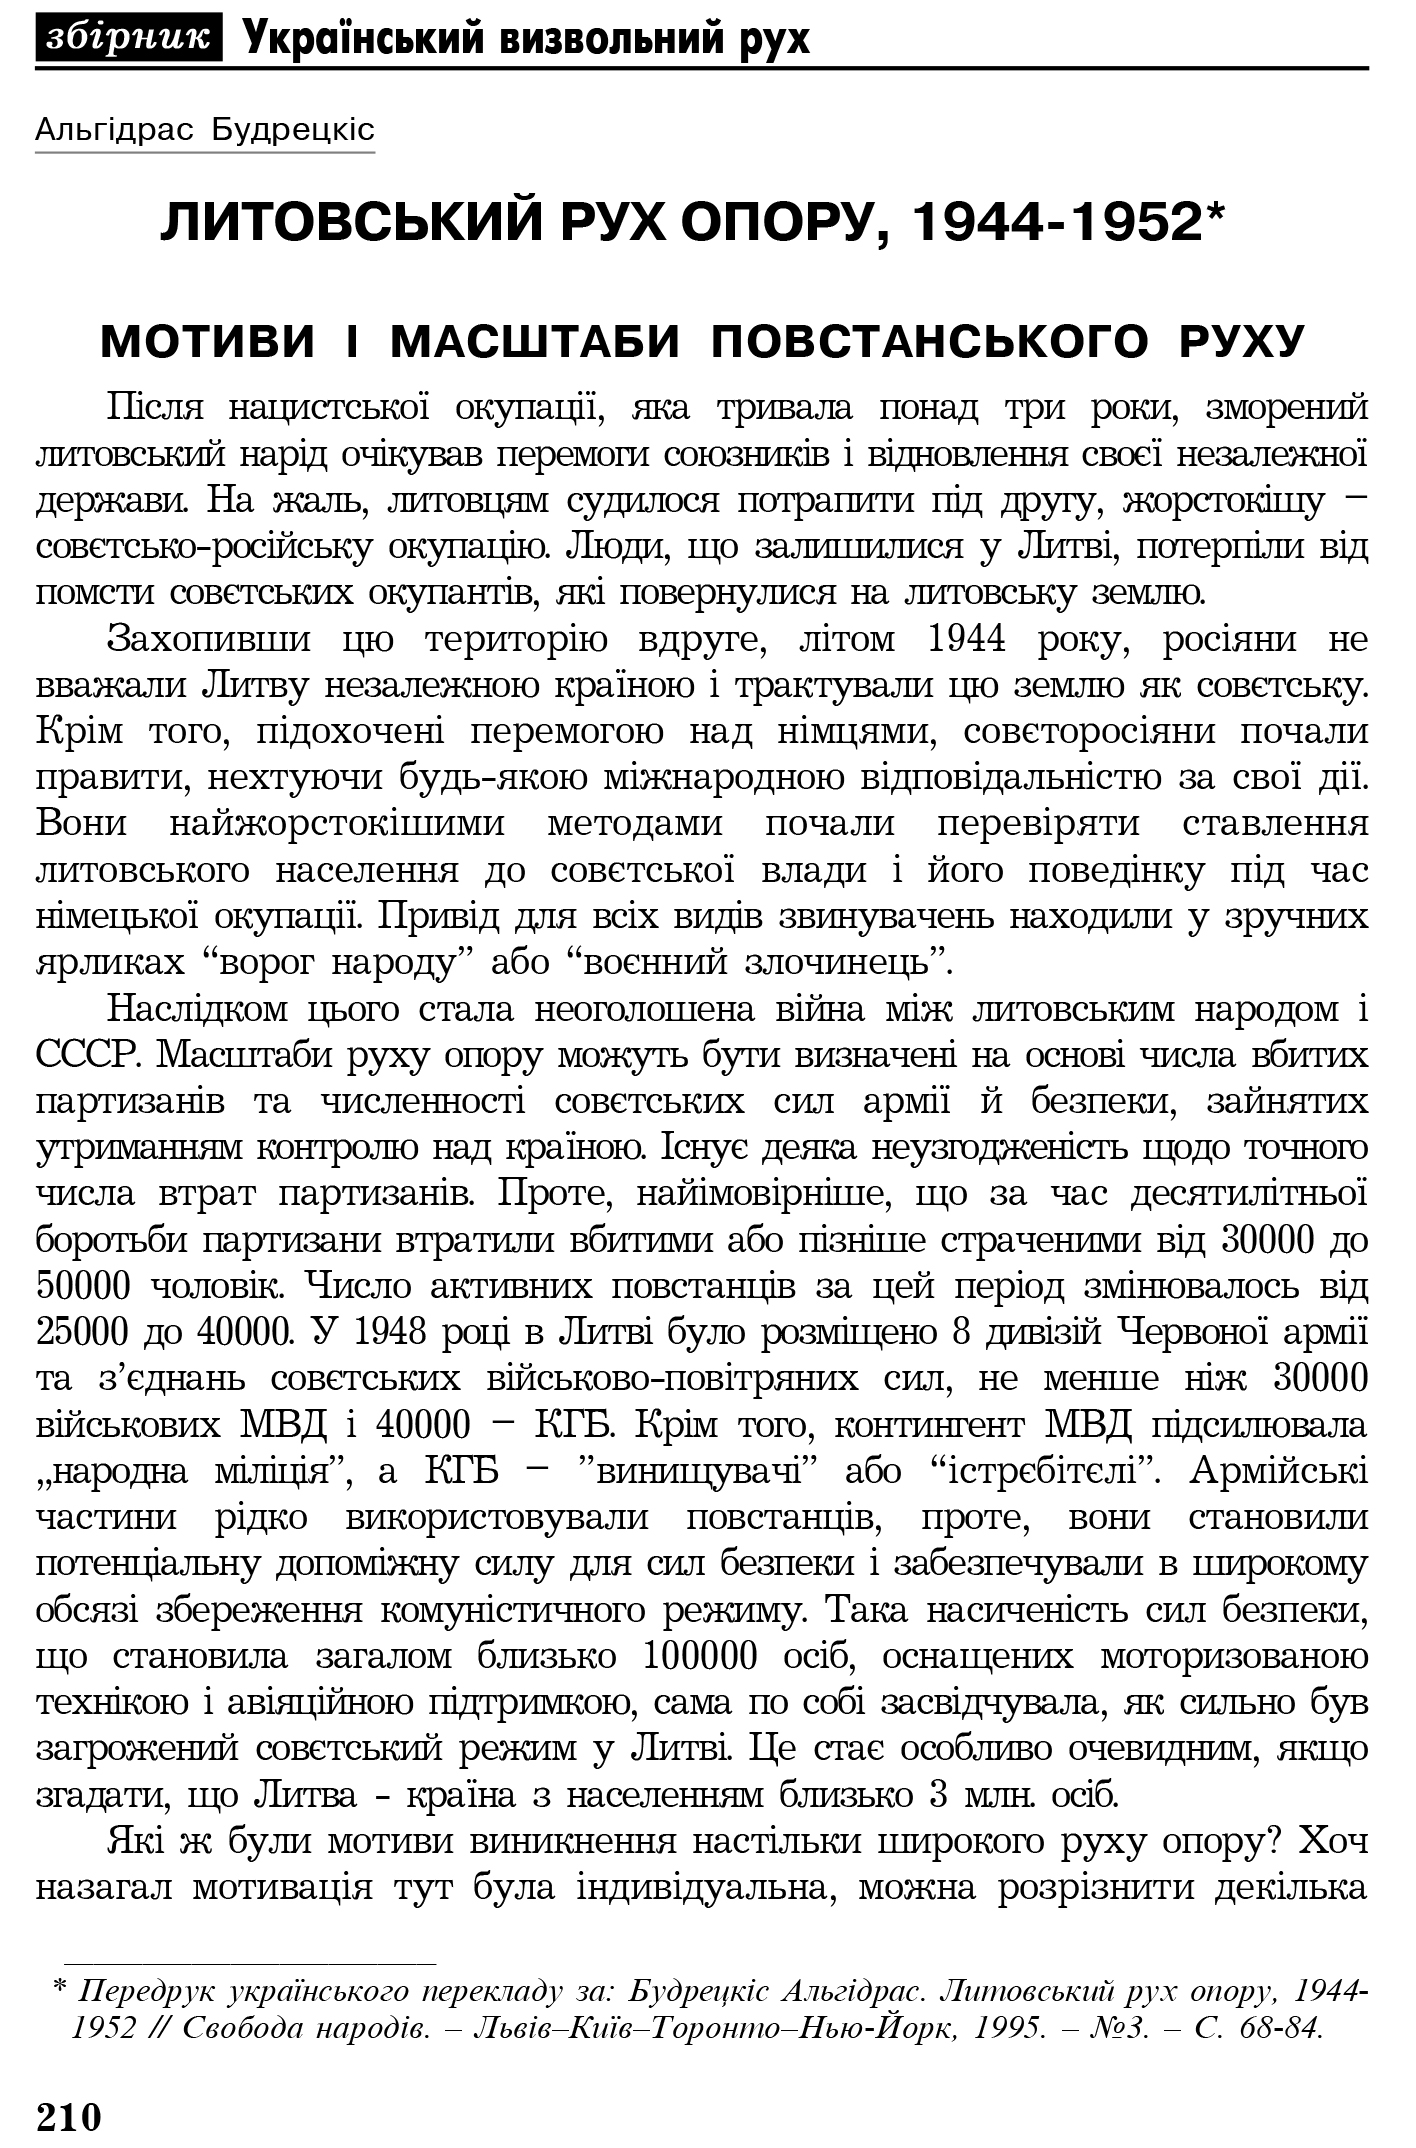 Український визвольний рух №4, ст. 210 - 229